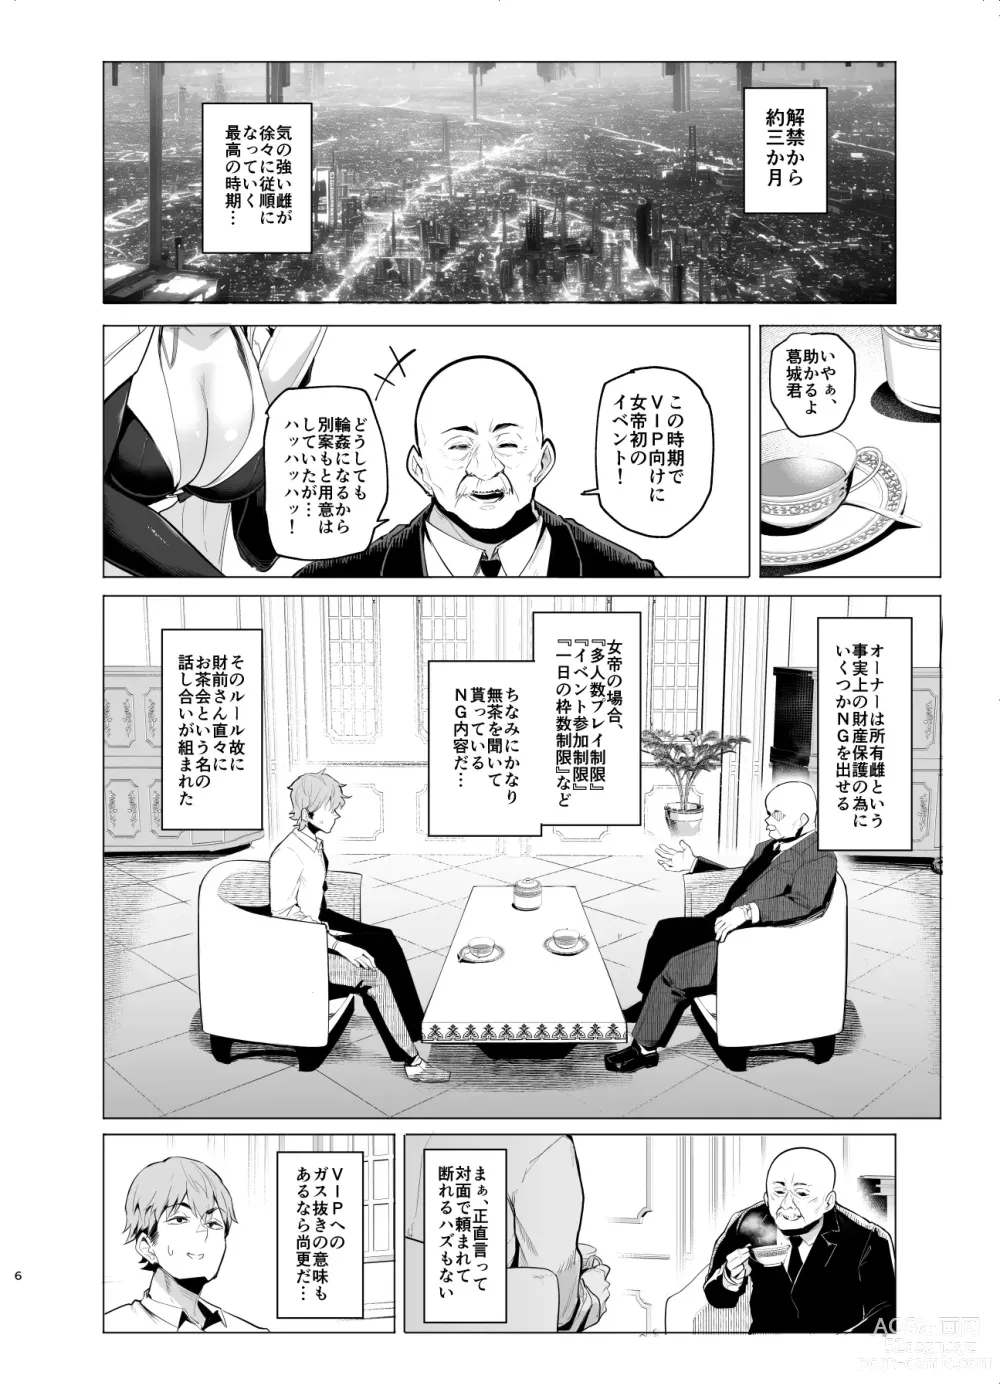 Page 5 of doujinshi Mesu Gacha III Preview Ban